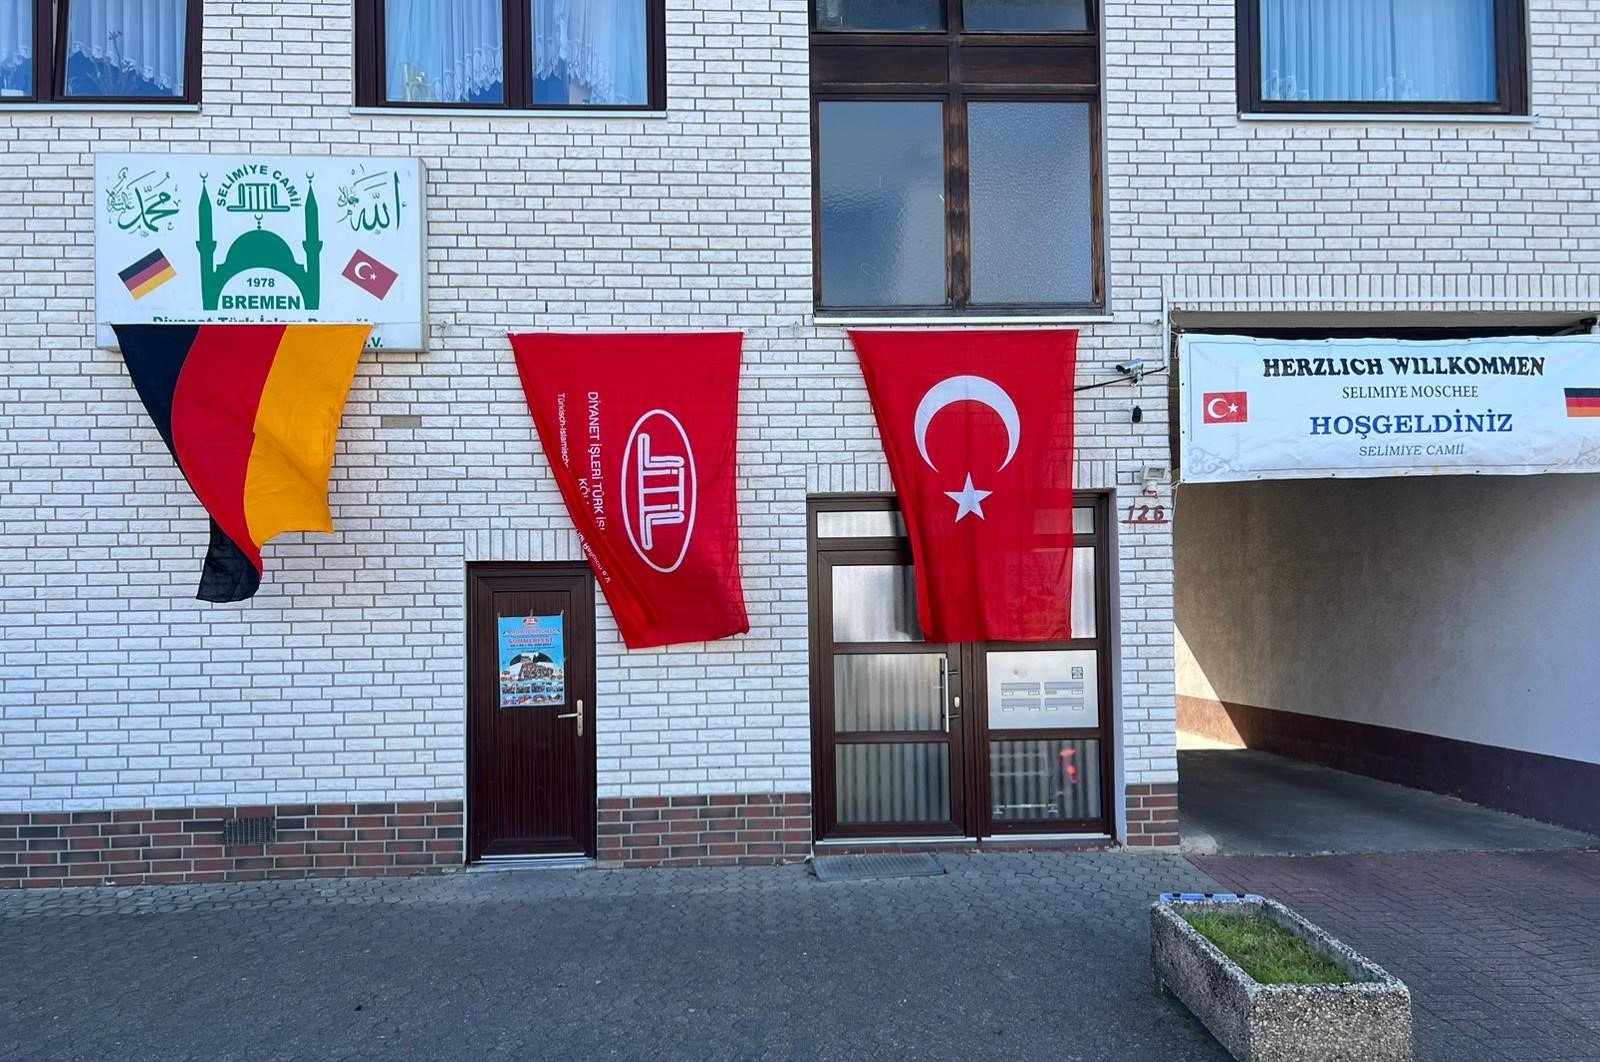 Une mosquée turque en Allemagne reçoit un courrier haineux néonazi